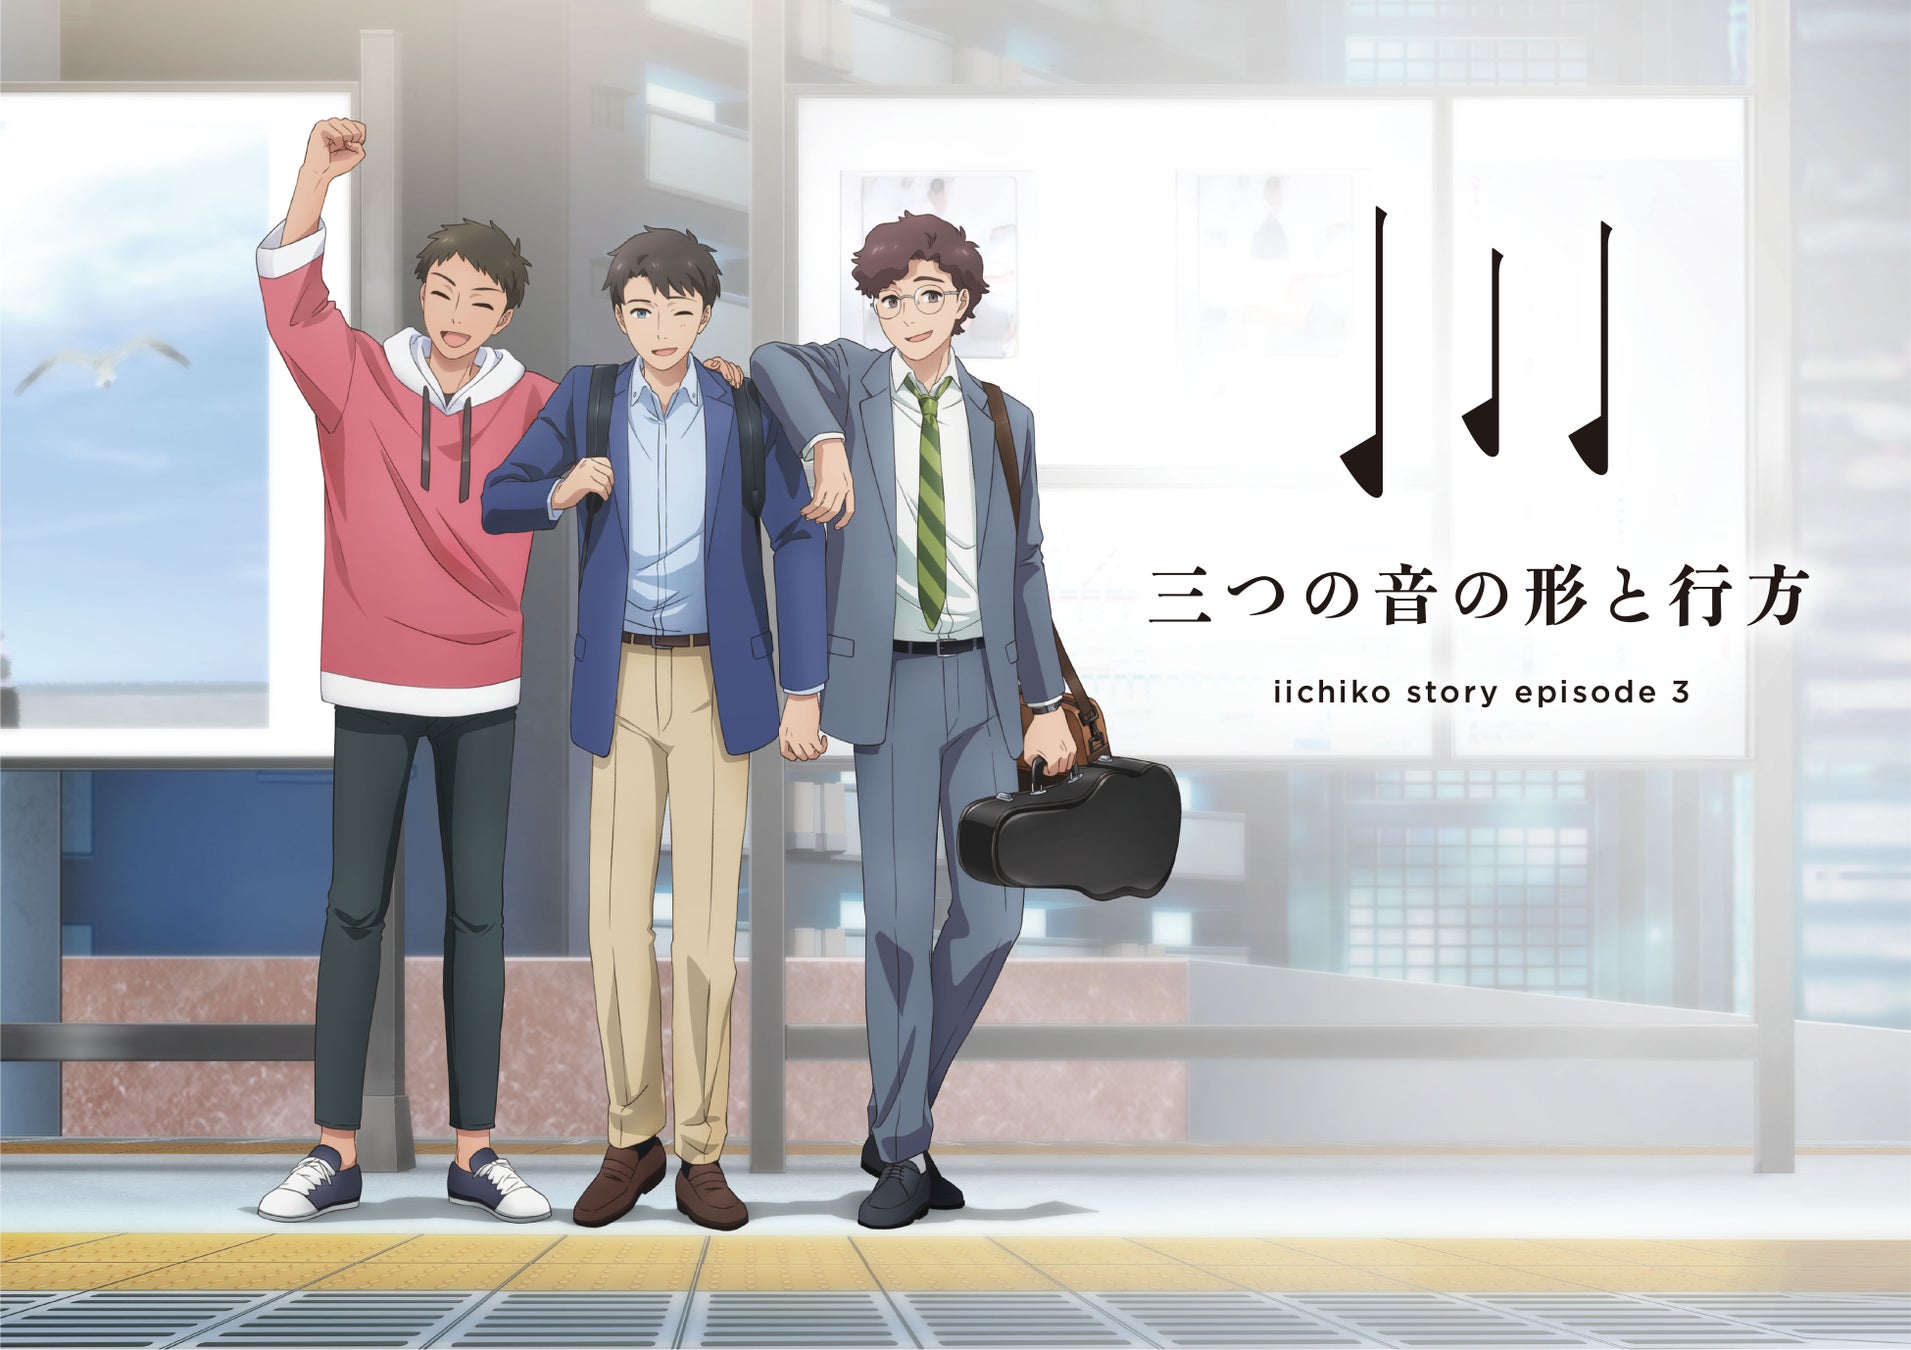 「いいちこ」のポスターから始まるアニメーションムービー「iichiko story ep.3 『三つの音の形と行方』」を公開。